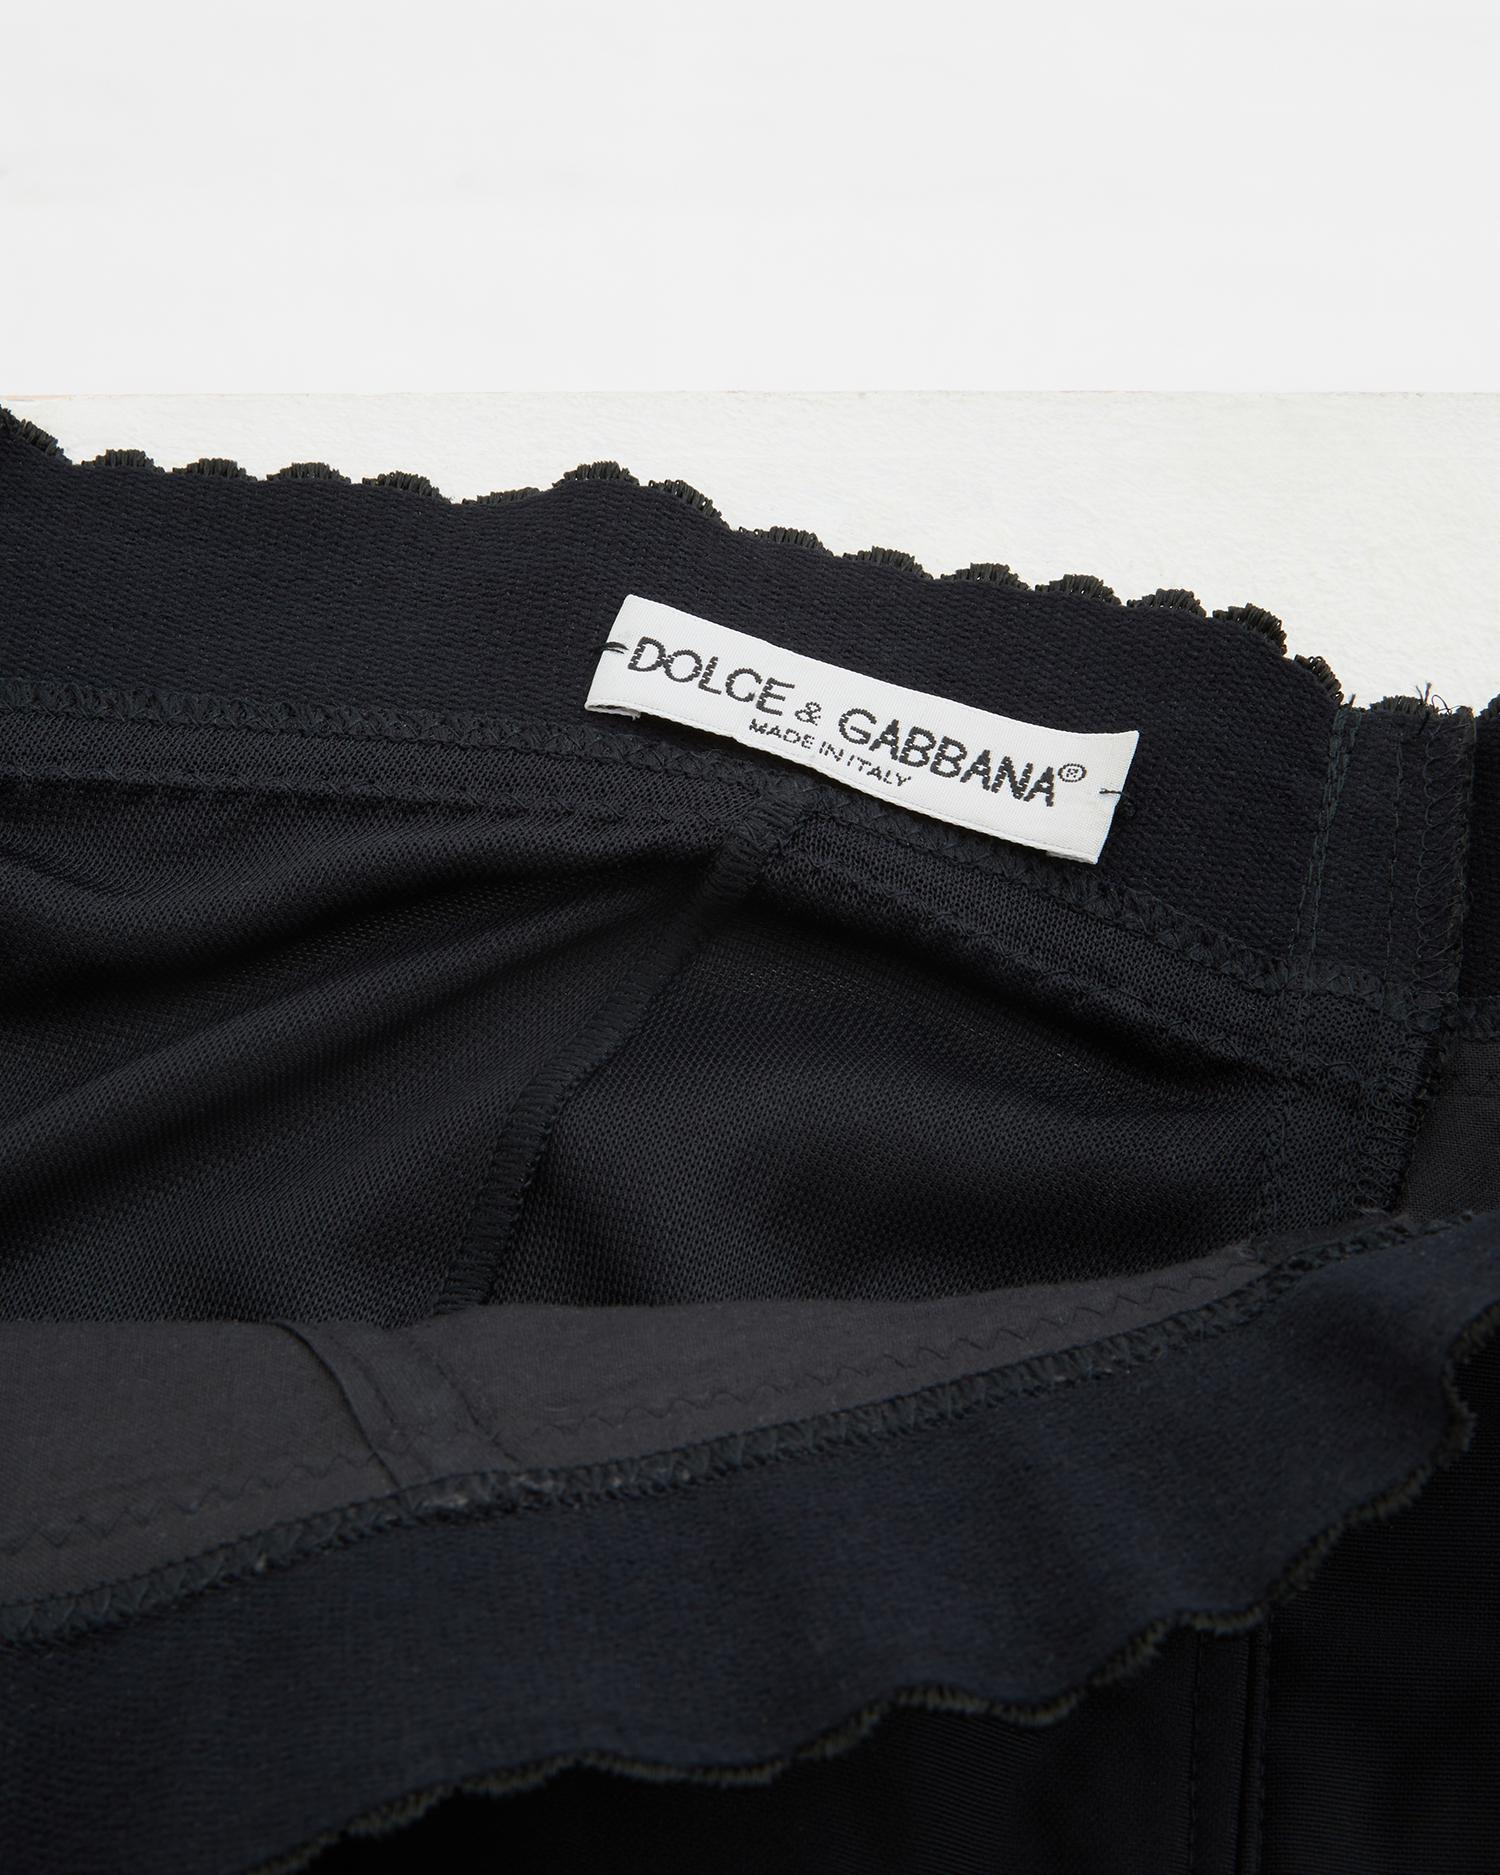 Dolce & Gabbana black corset pencil skirt, ss 1991 1